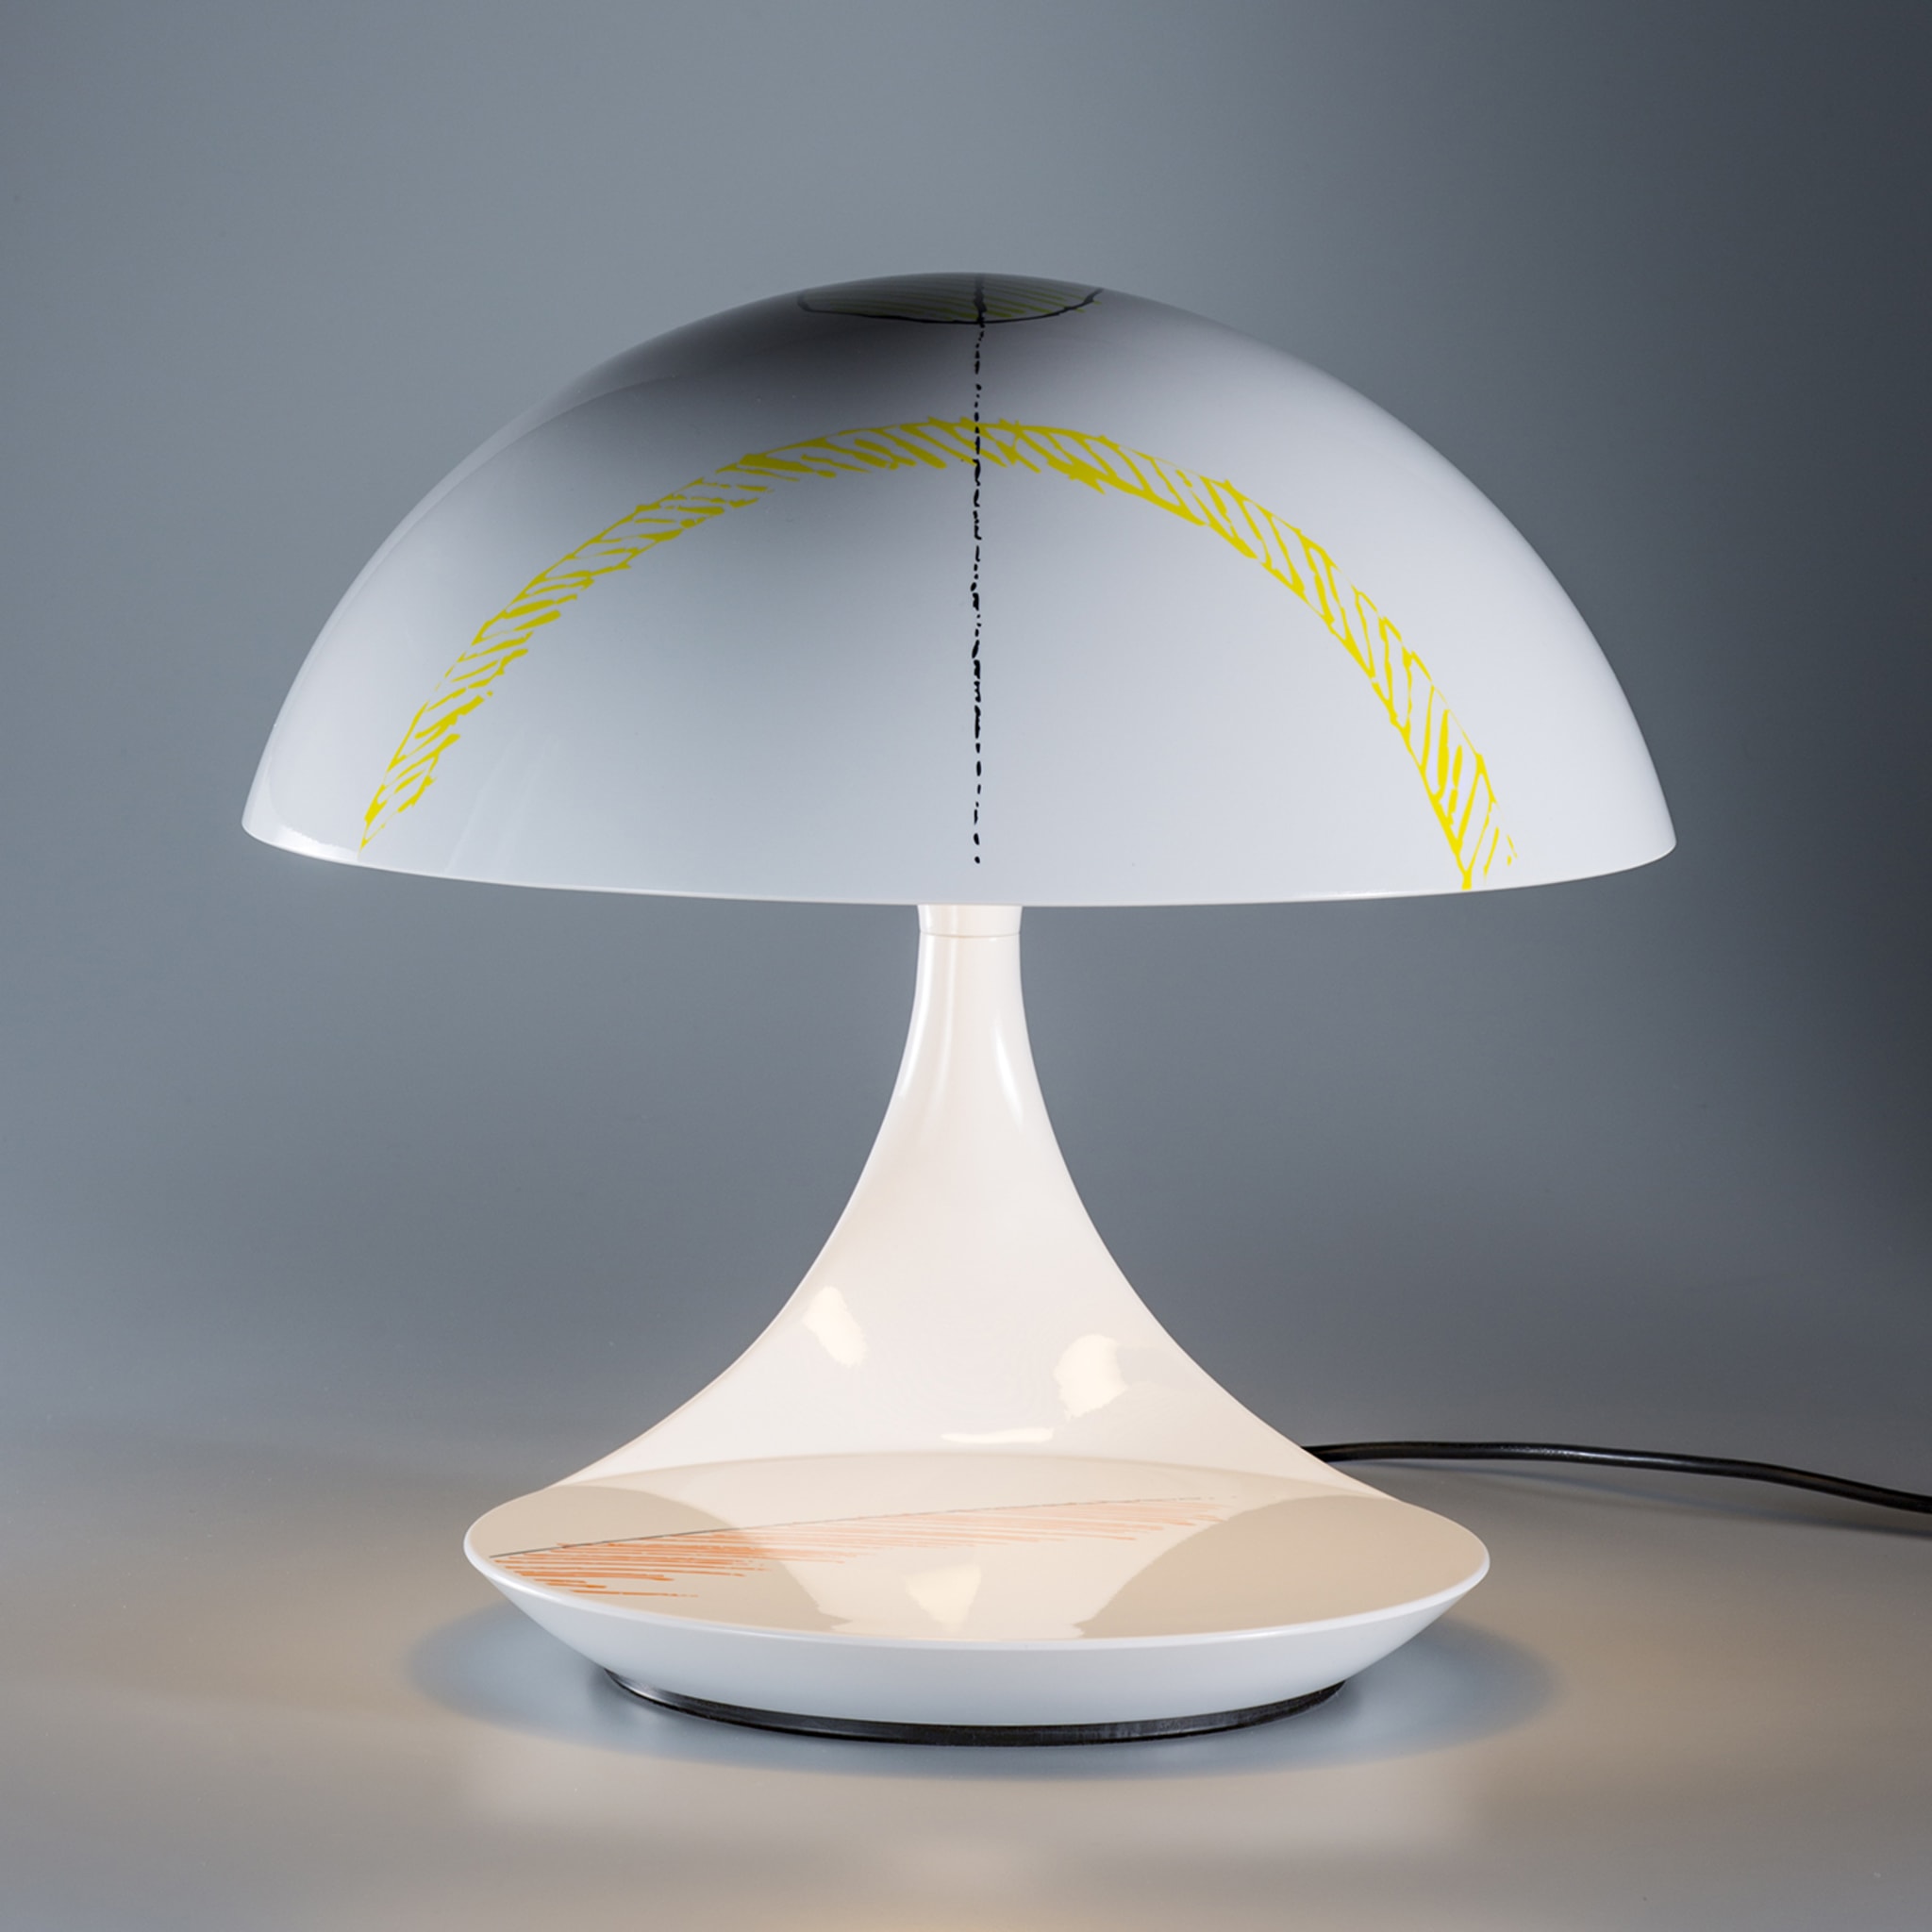 Cobra Texture Polychrome Table Lamp by Giorgio Brogi - Alternative view 1